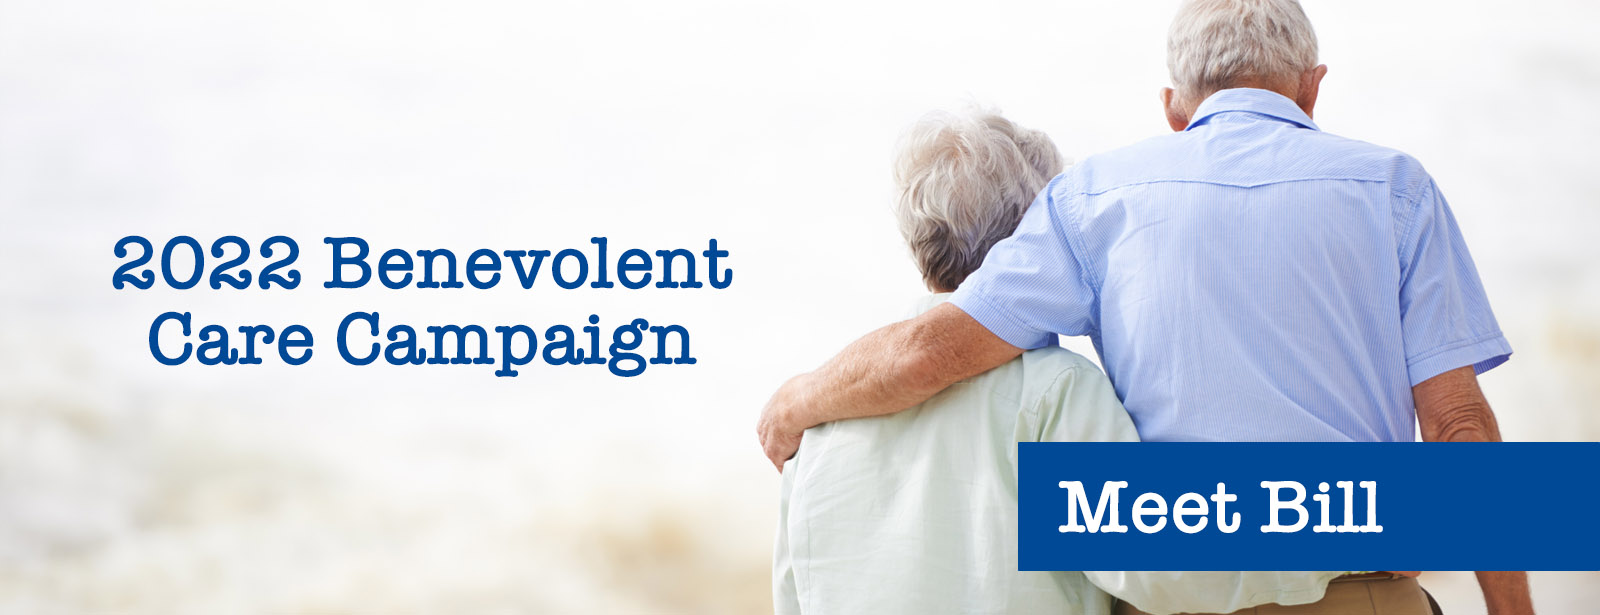 2022 Benevolent Care Campaign